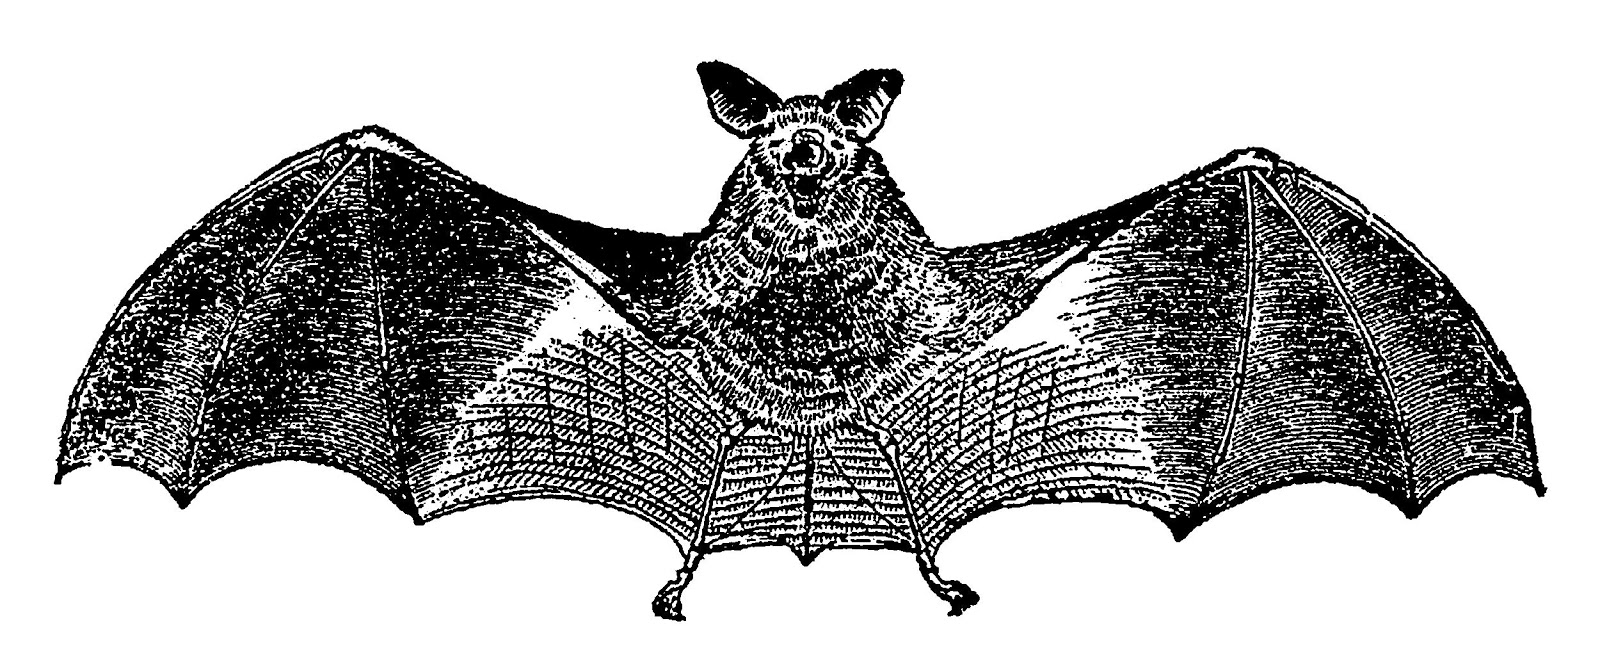 Vampire clipart spooky bat. Free download clip art